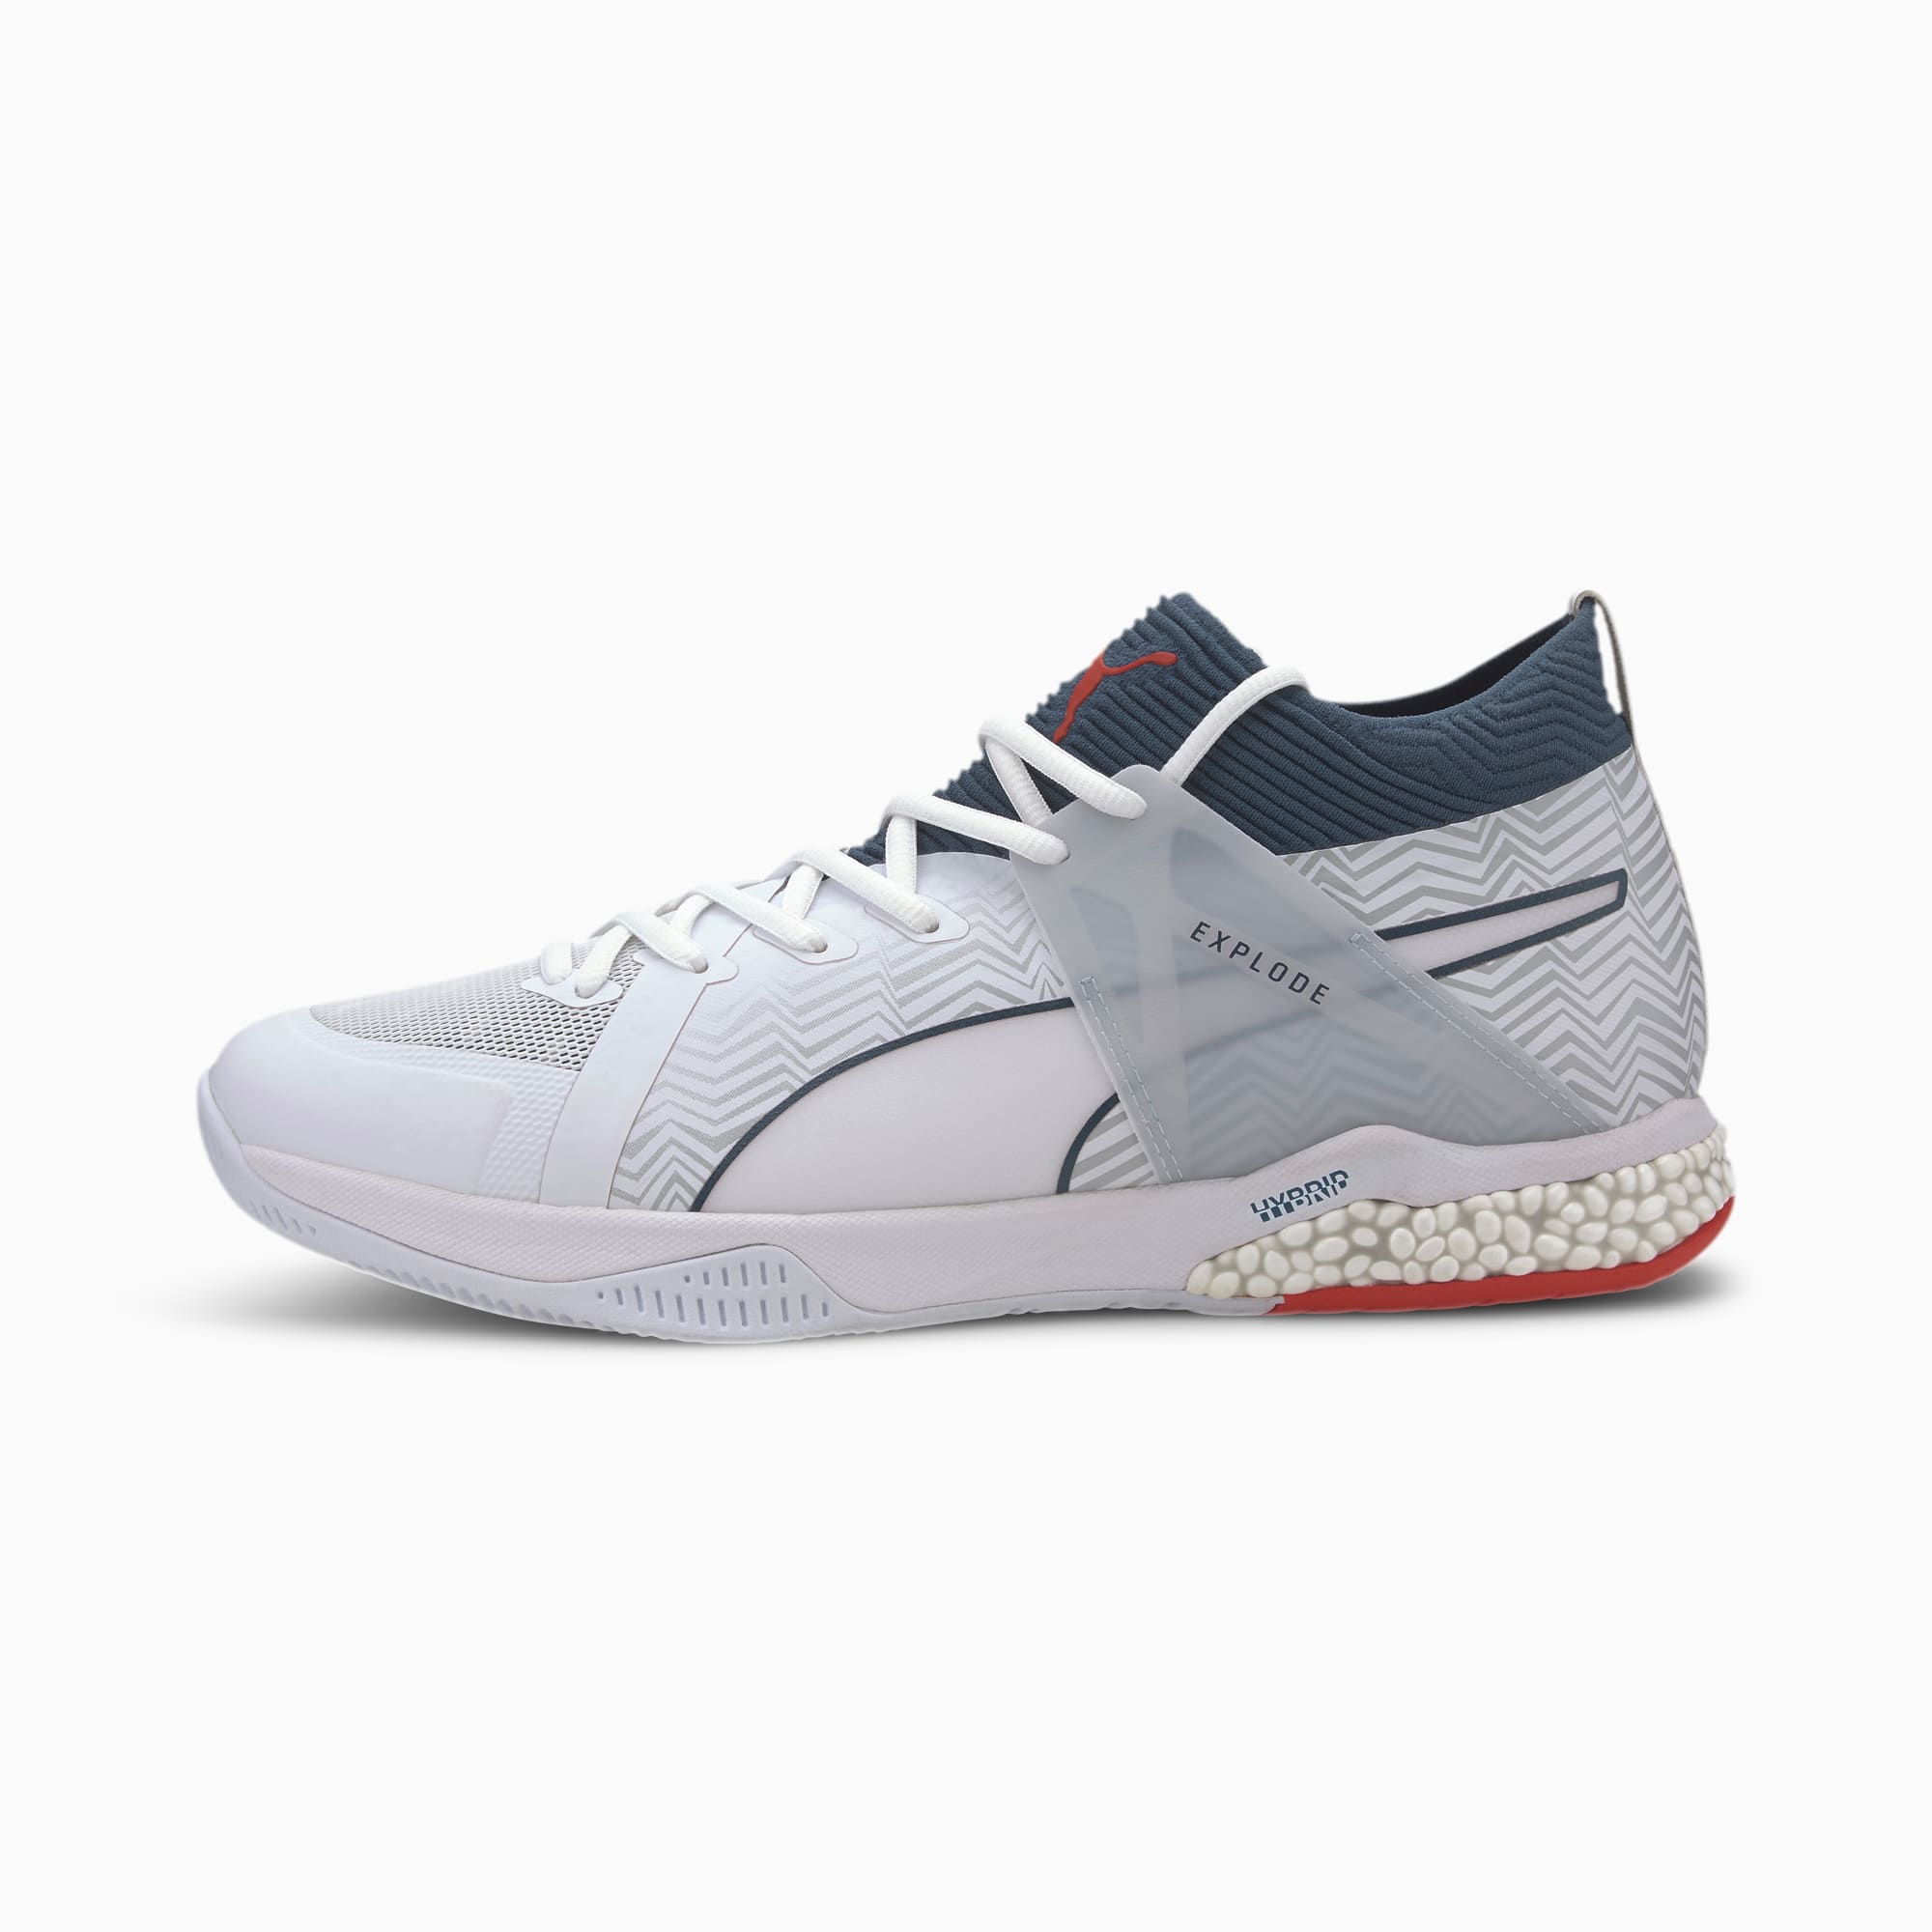 Explode EH 1 Handball Shoes | White-Denim-Risk Red-Gray | PUMA Shoes | PUMA